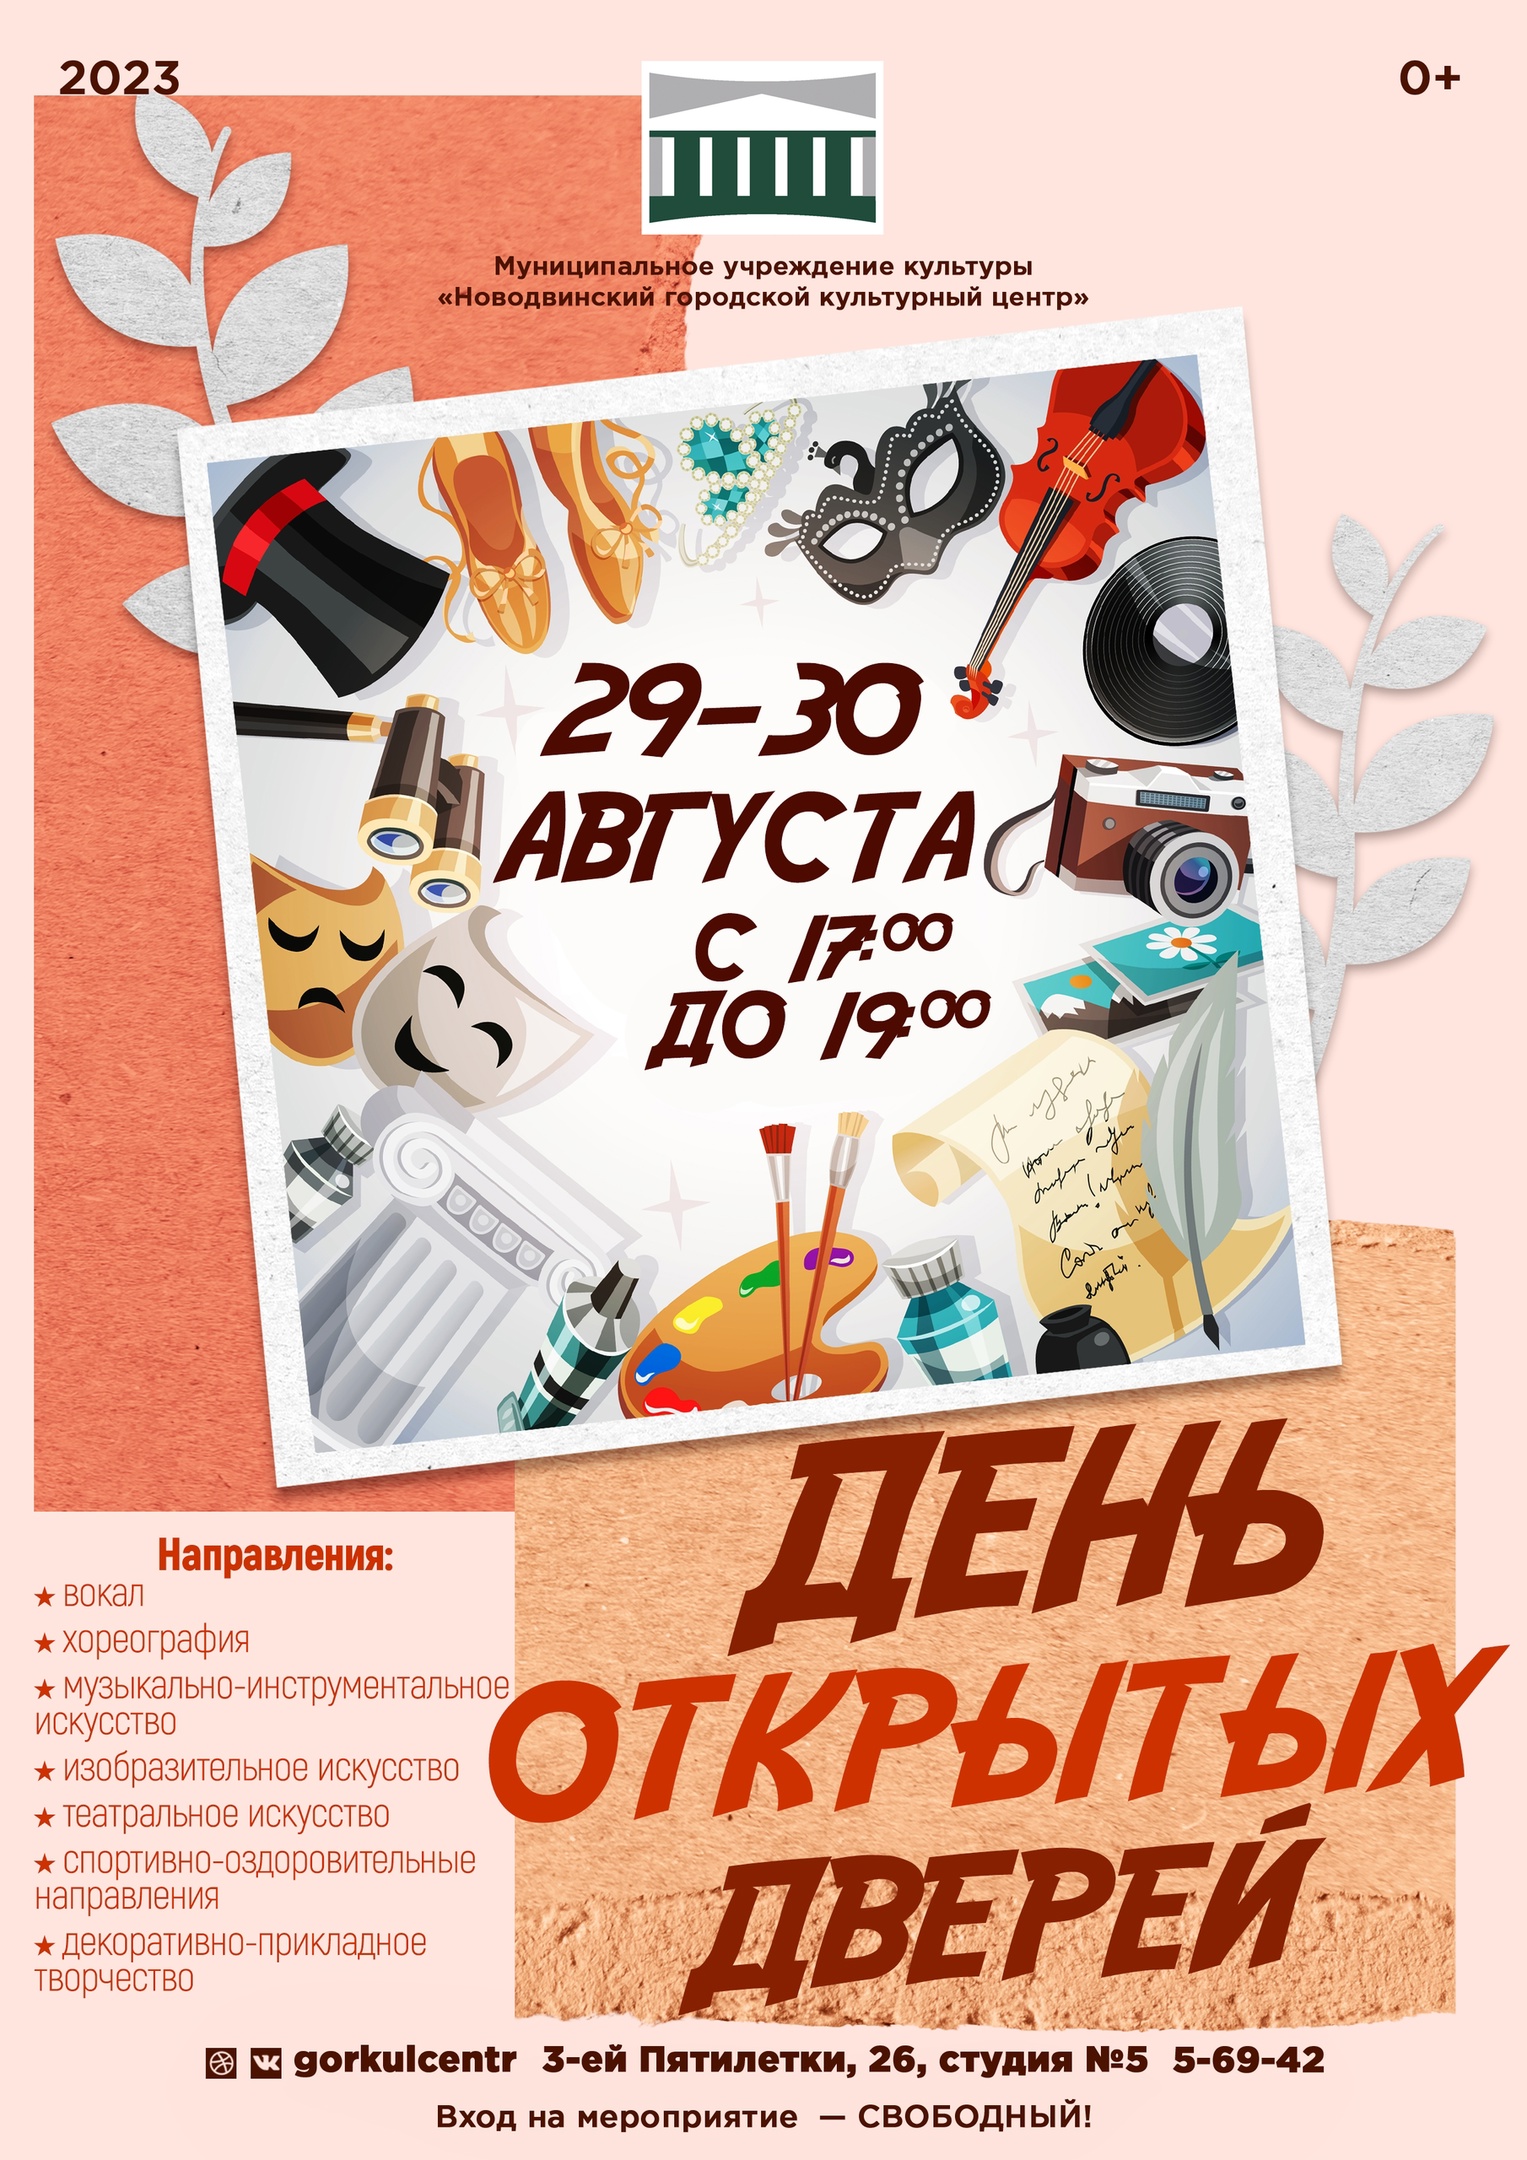 Новодвинский городской культурный центр приглашает на День открытых дверей!